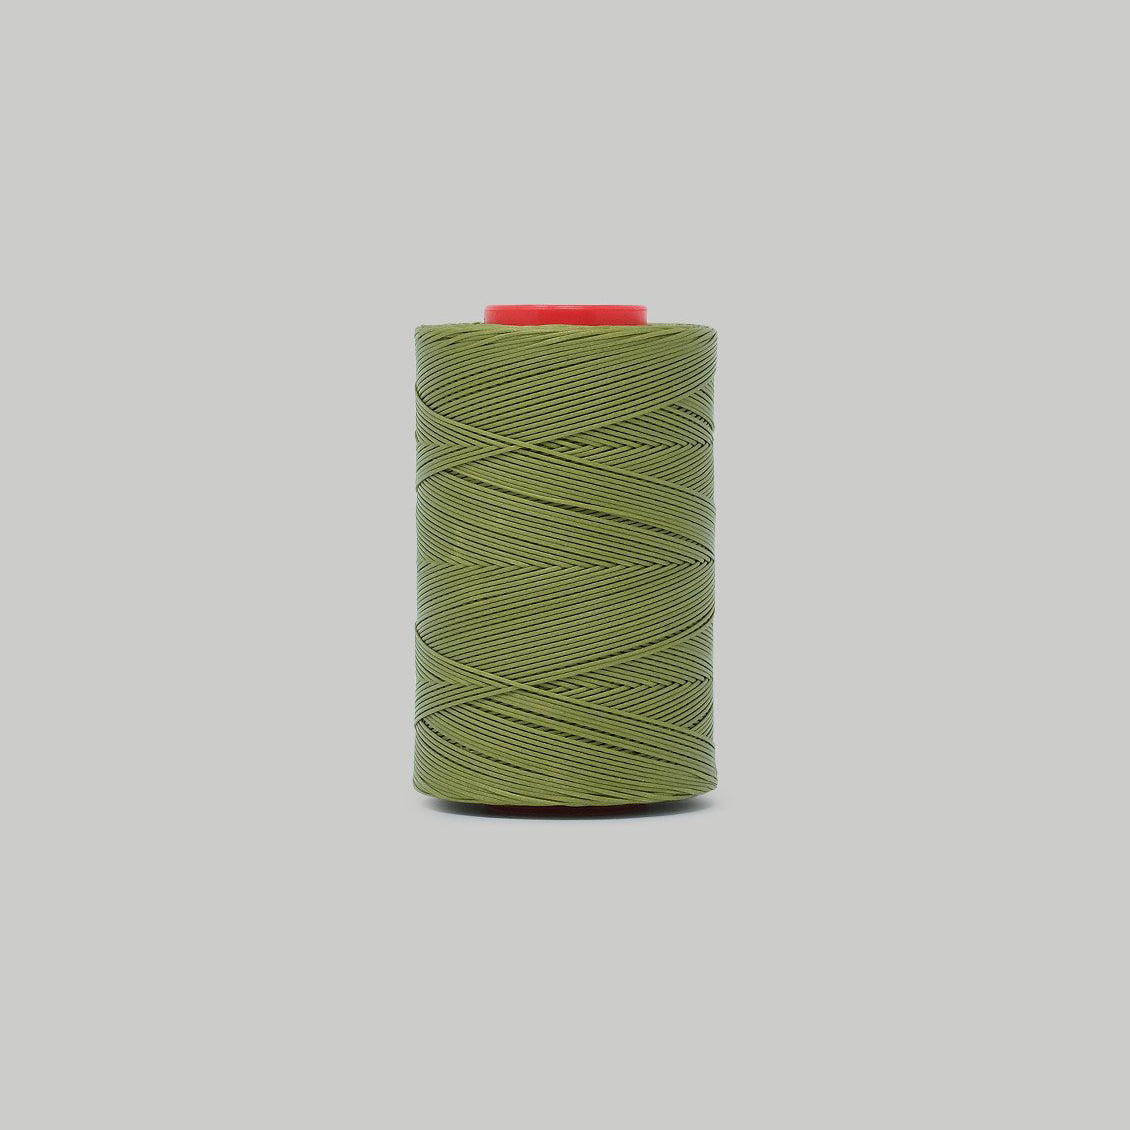 Julius Koch Ritza 25 Thread / 0.80 MM / 21 colours